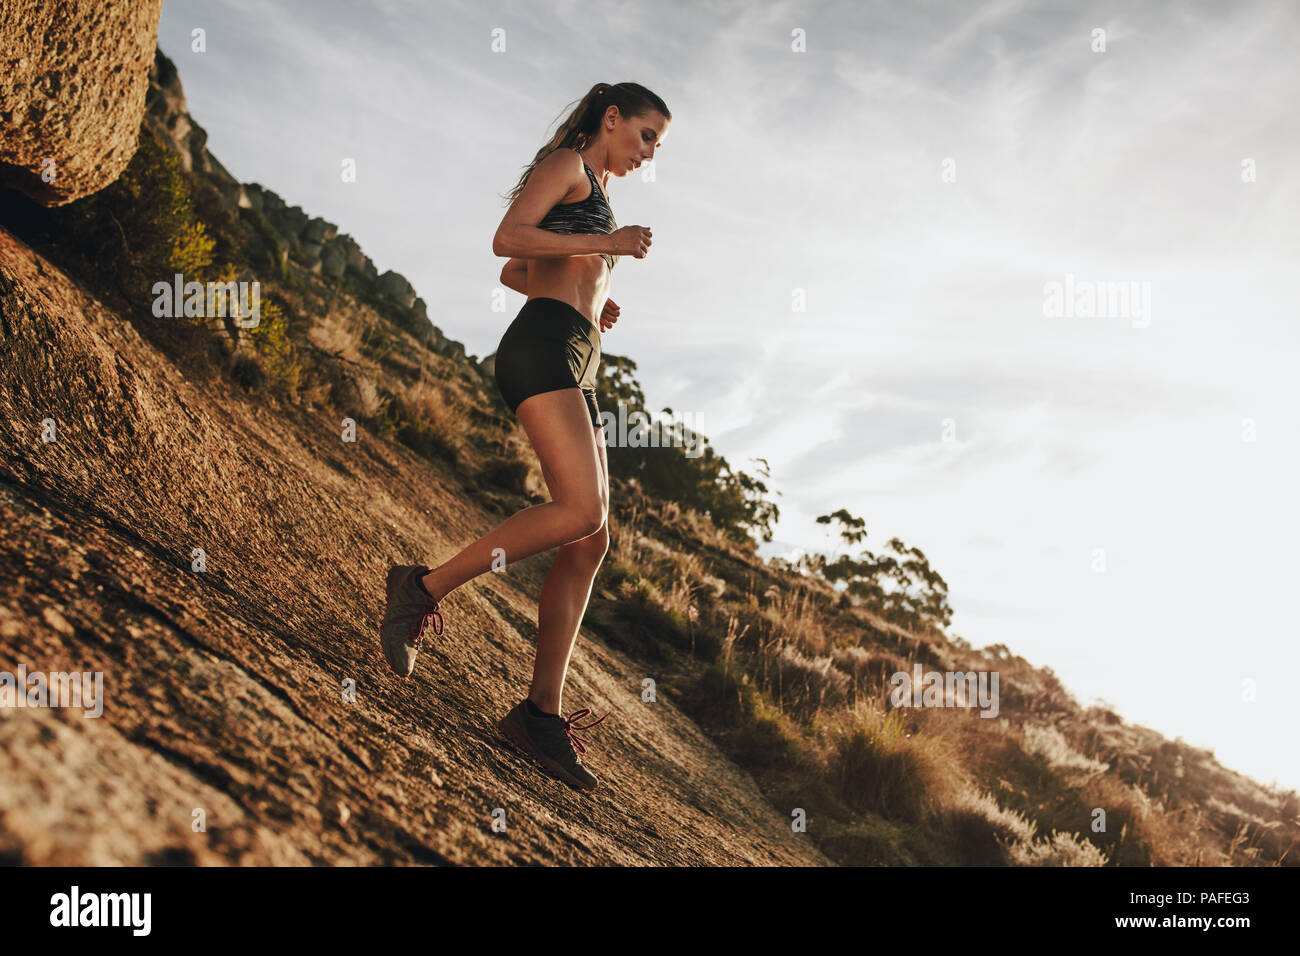 Foto De Stock Trail Running Mujer, Libre De Derechos